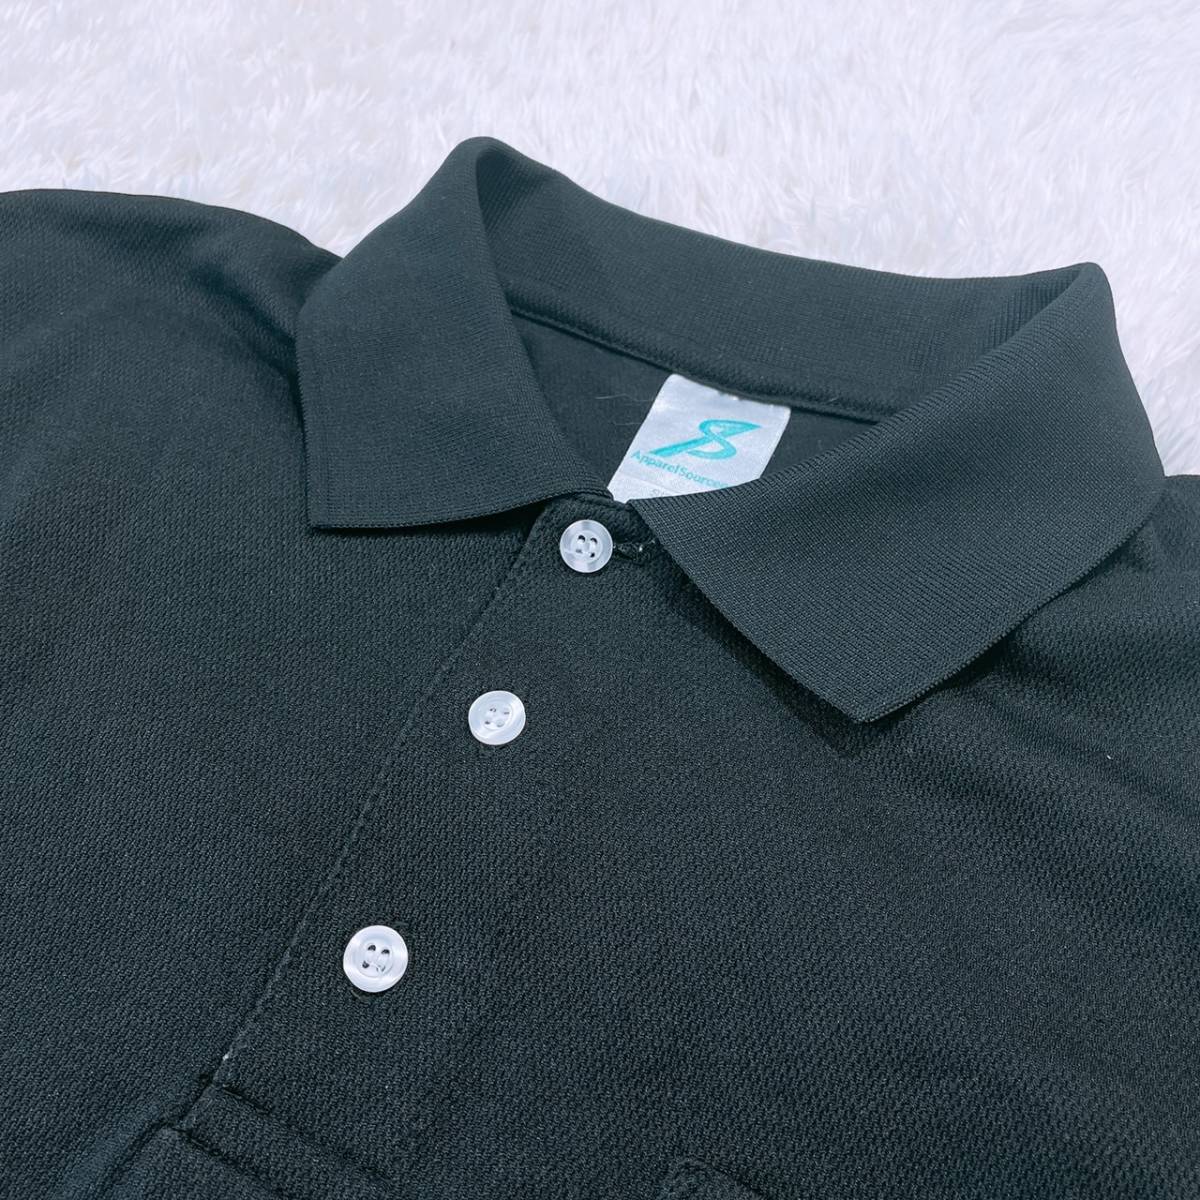 【21435】 Apparel Source Pro アパレルソースプロ トップス シャツ 半袖シャツ ポロシャツ ボタンダウン 胸ポケット ブラック 黒 L